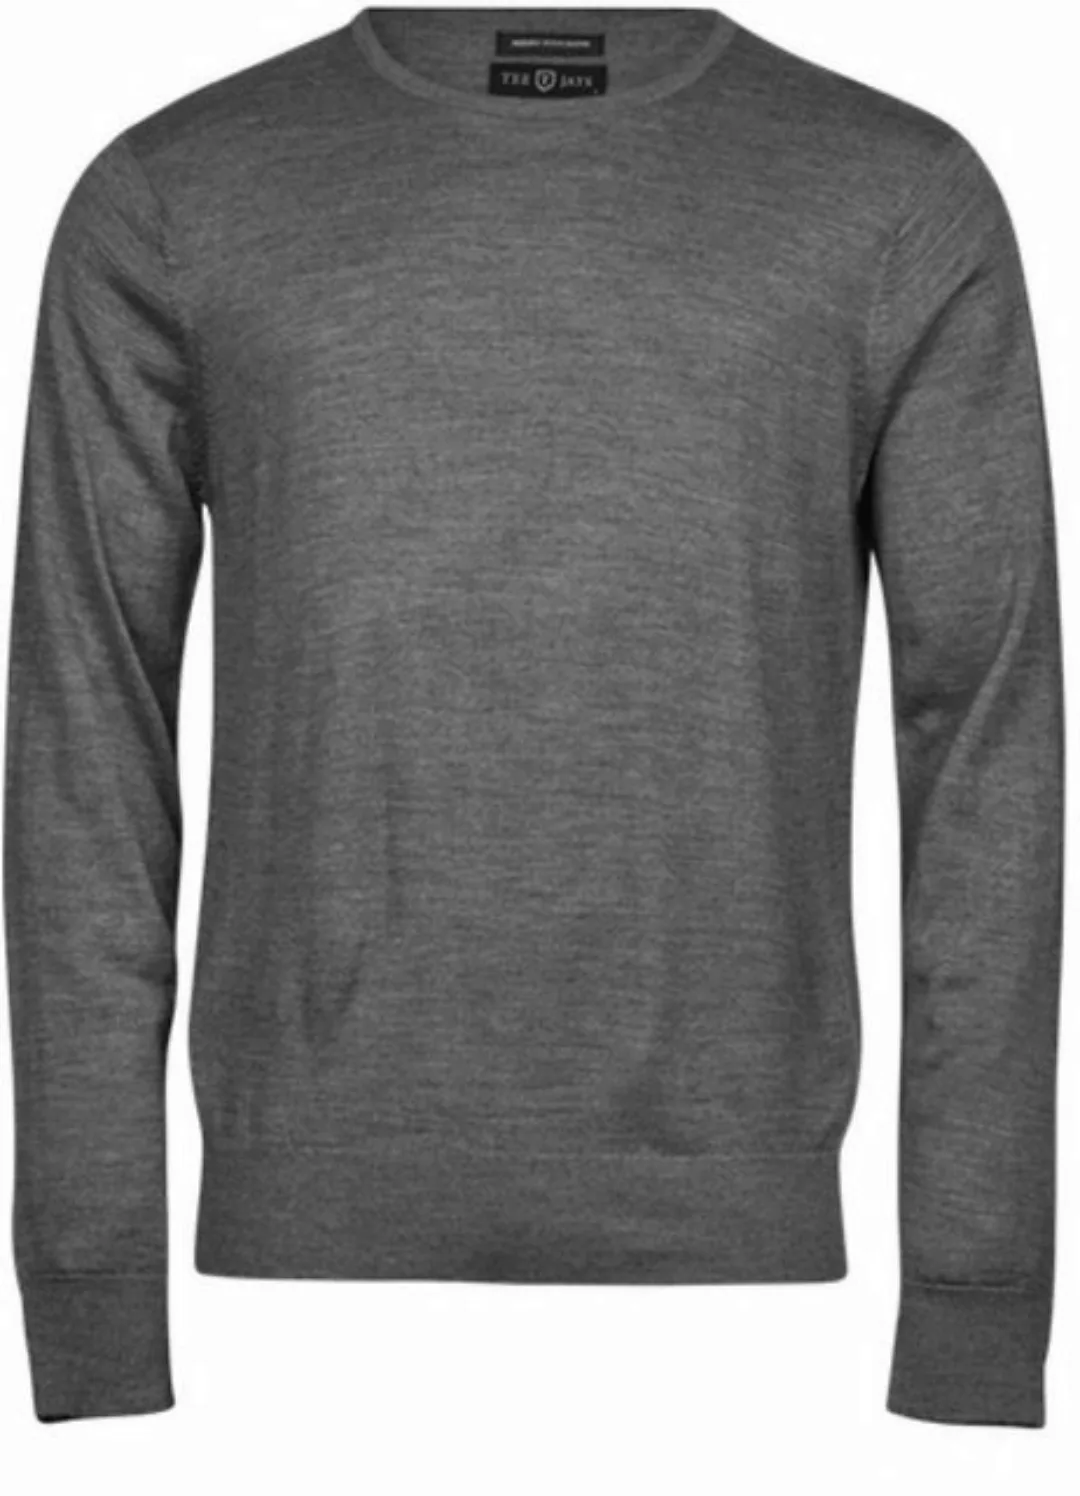 Tee Jays Sweatshirt Herren Crew Neck Sweater / Pullover günstig online kaufen